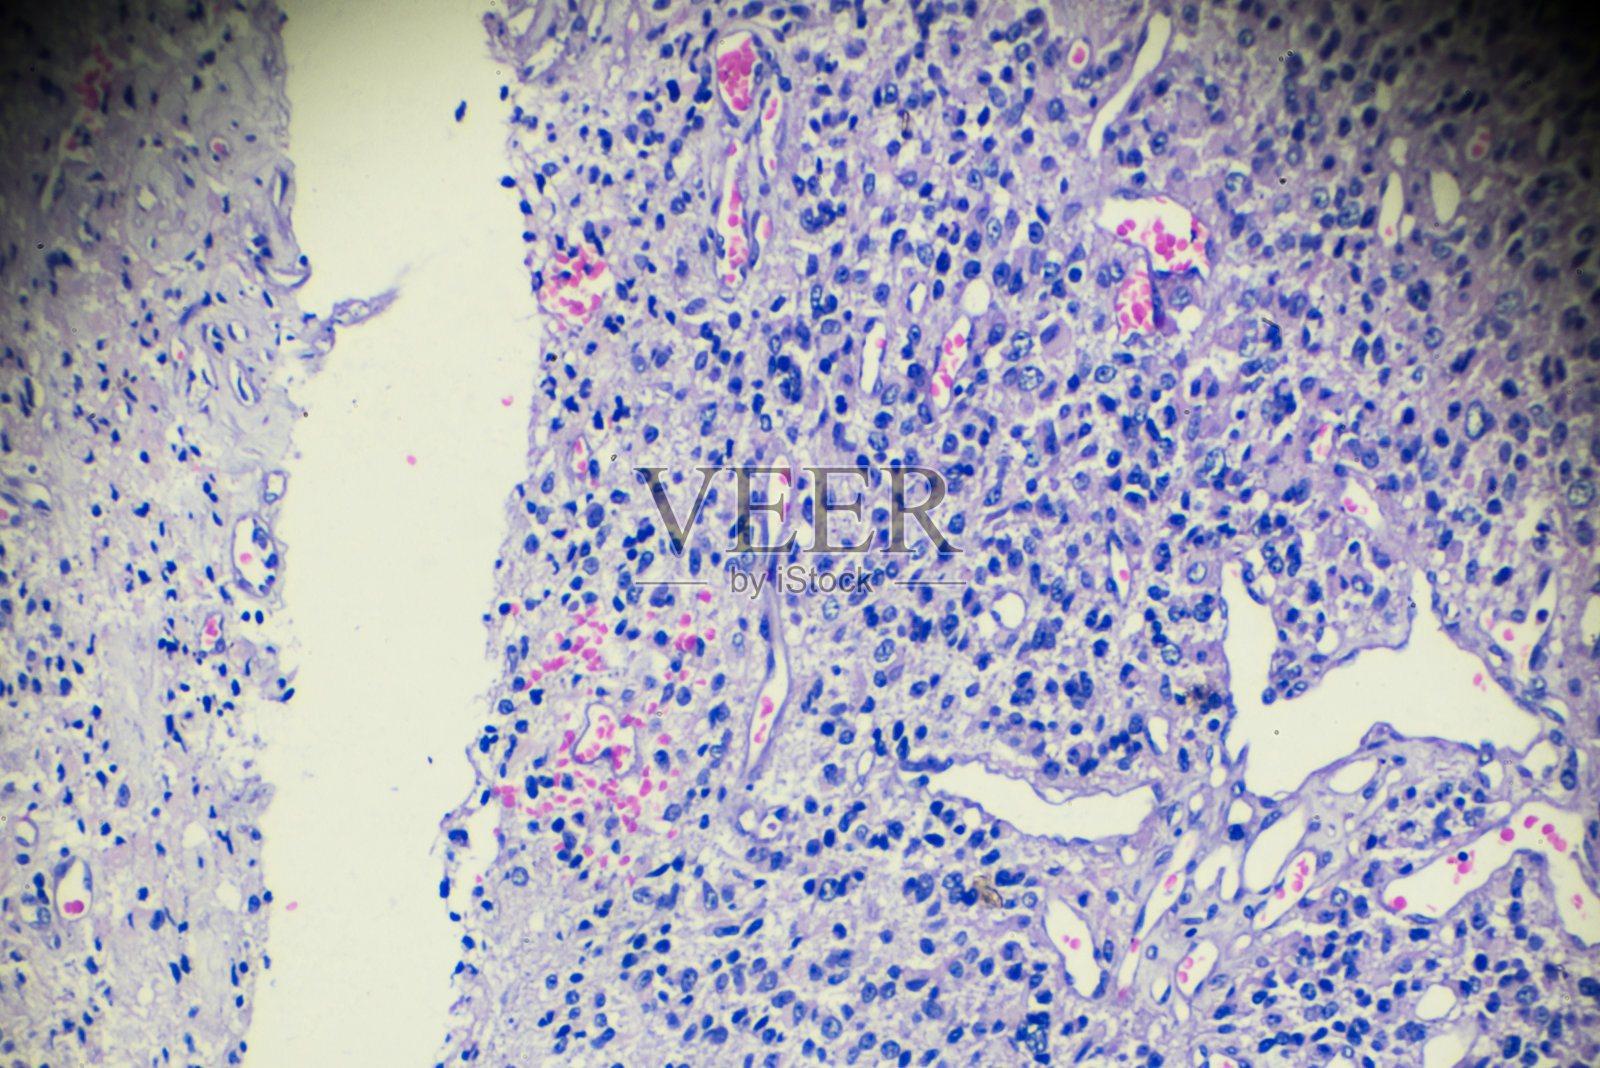 显微镜下观察睾丸生殖细胞瘤照片摄影图片